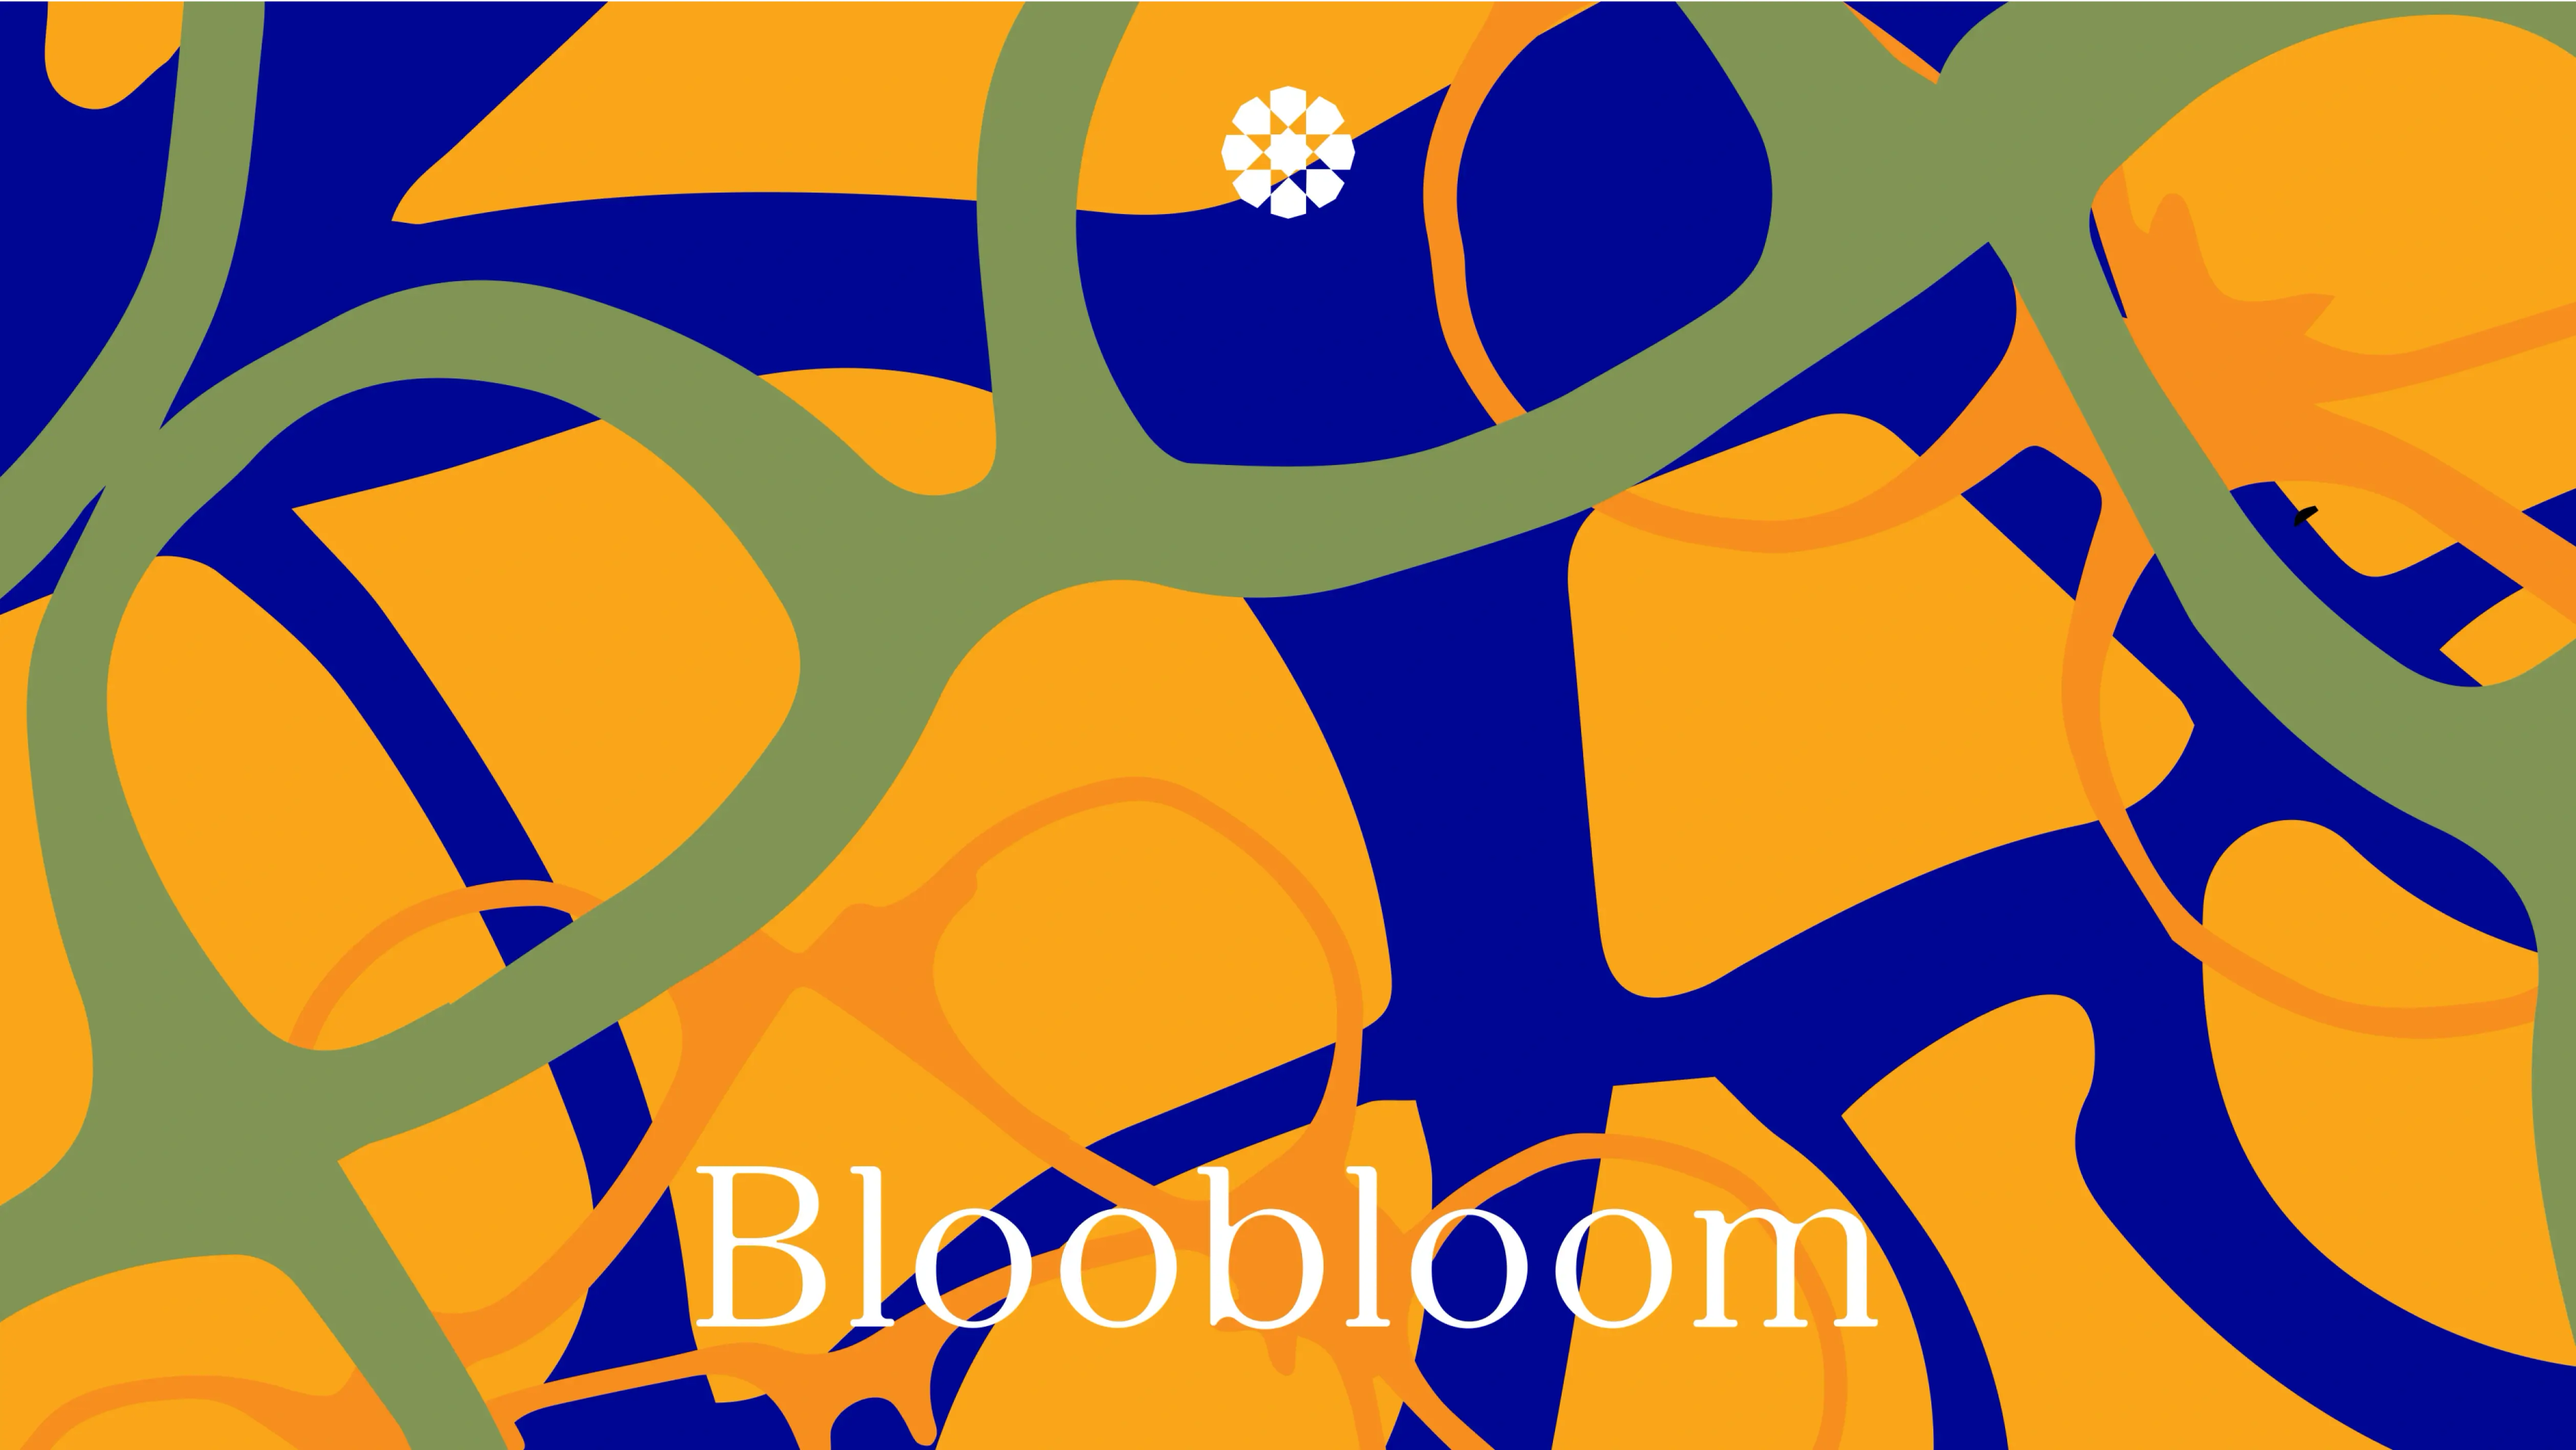 Bloobloom branding illustration by Bodkin Studio